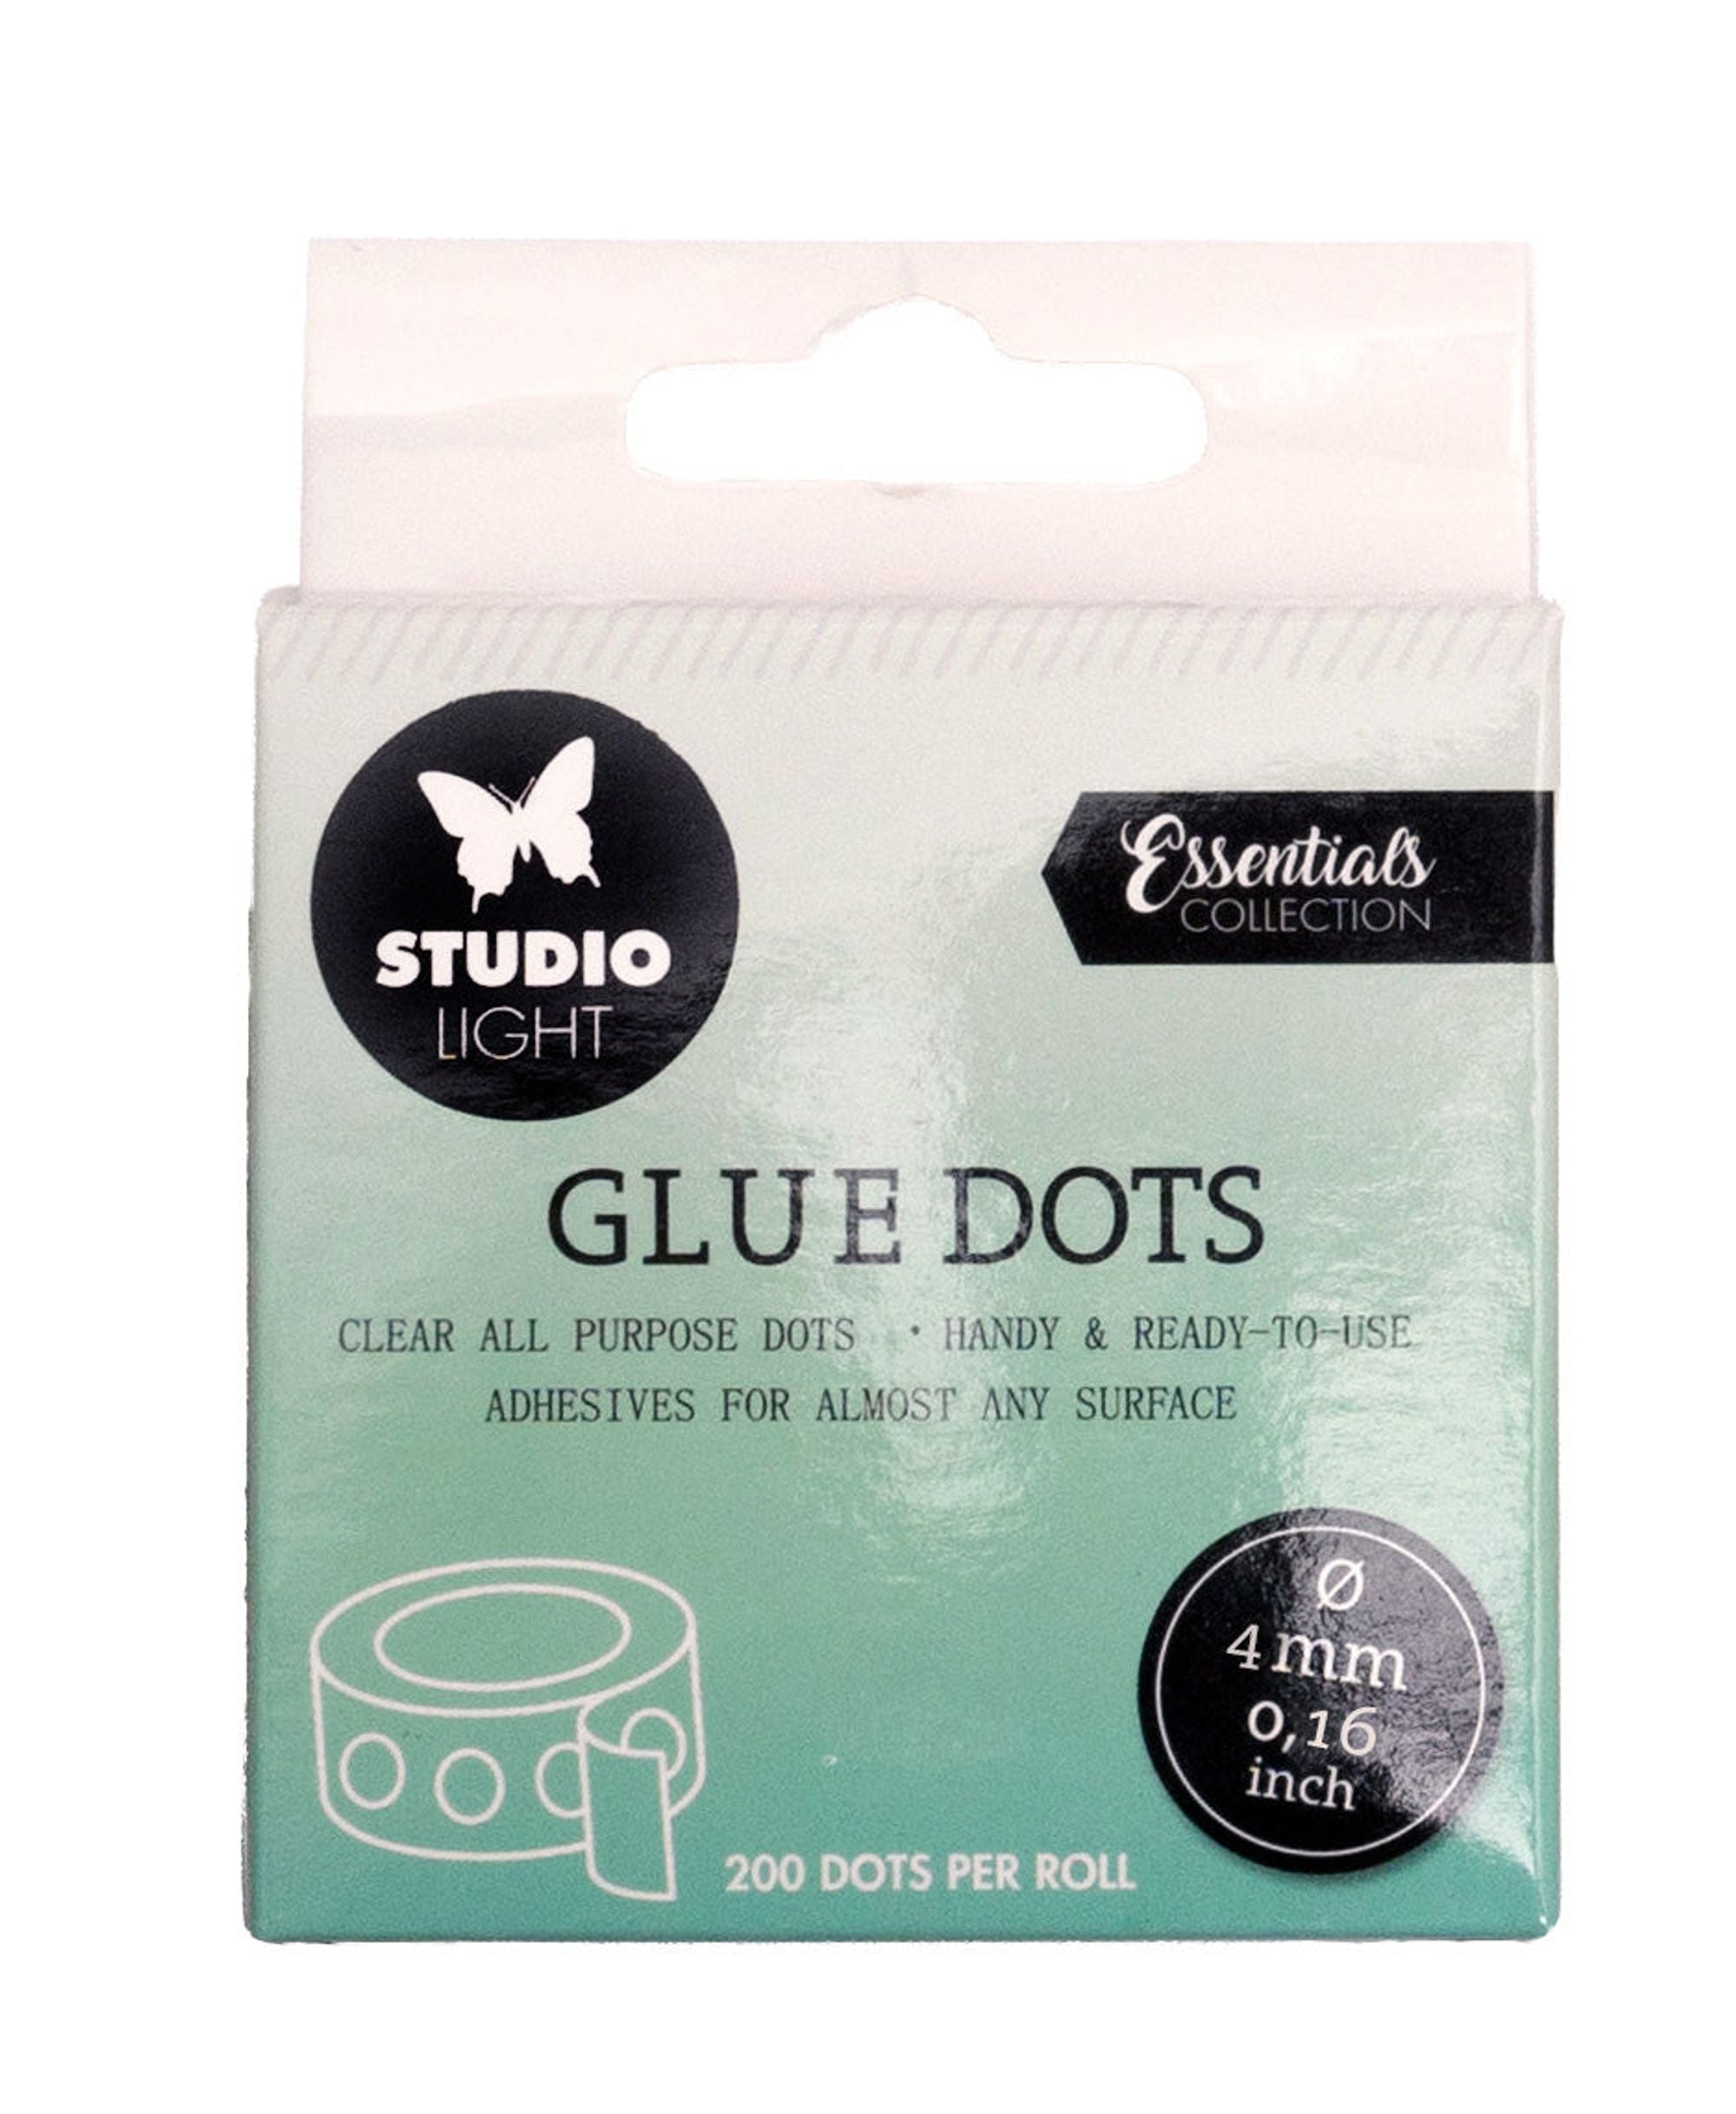 1/2 Craft Glue Dots, Hobby Lobby